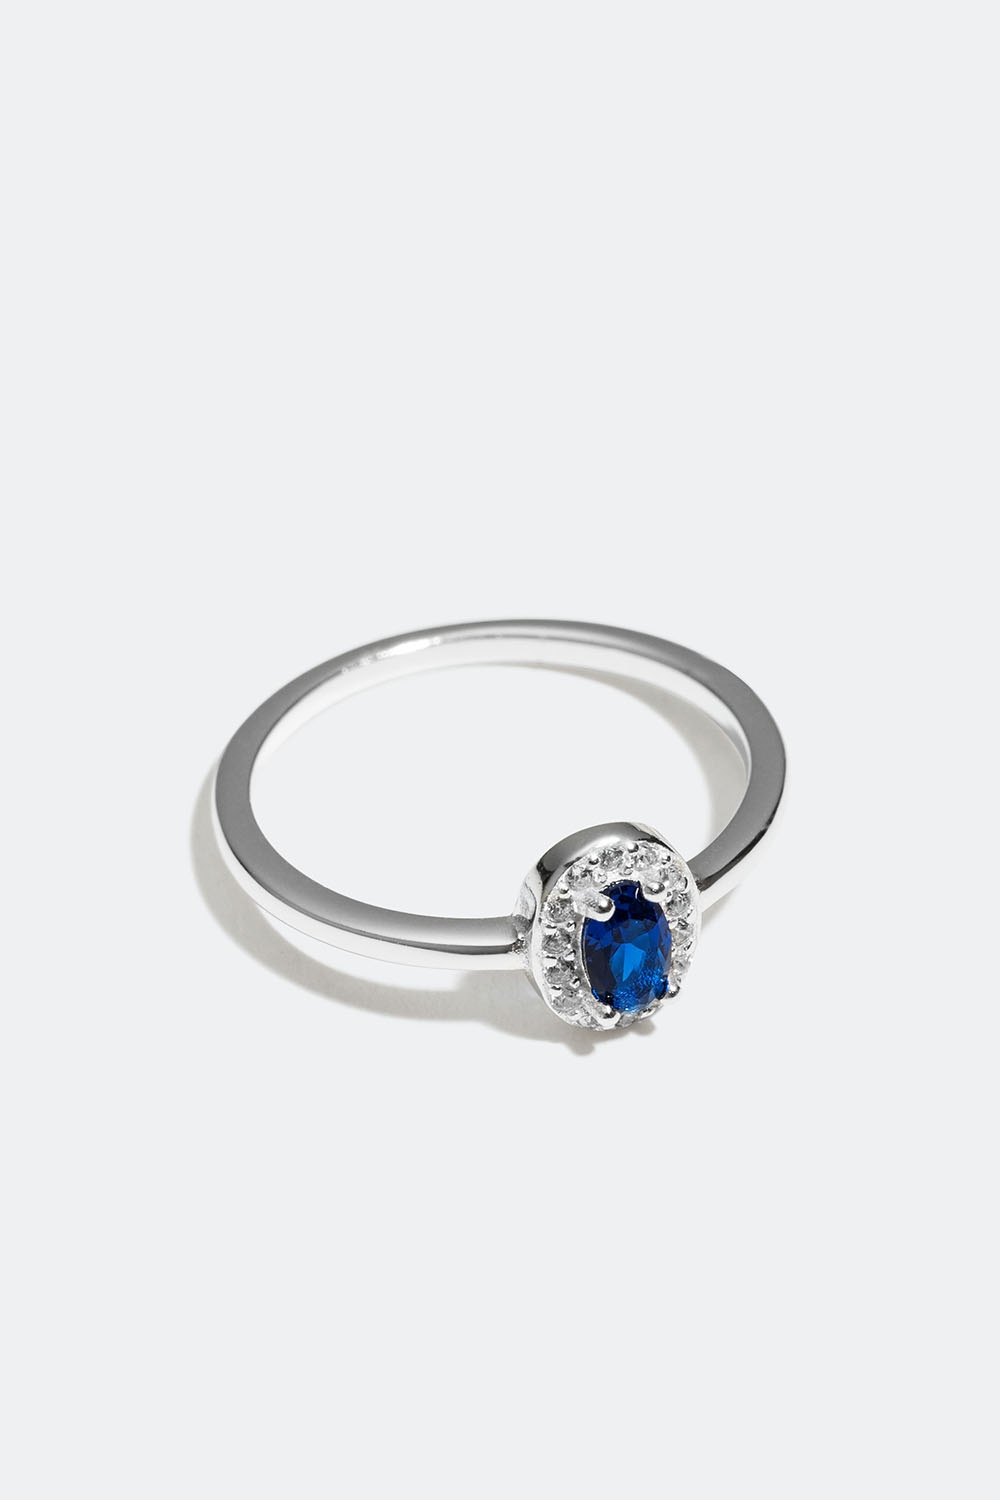 Ring i ægte sølv med oval blå kubisk zirkonia i gruppen Ægte sølv / Sølvringe / Sølv hos Glitter (55600064)